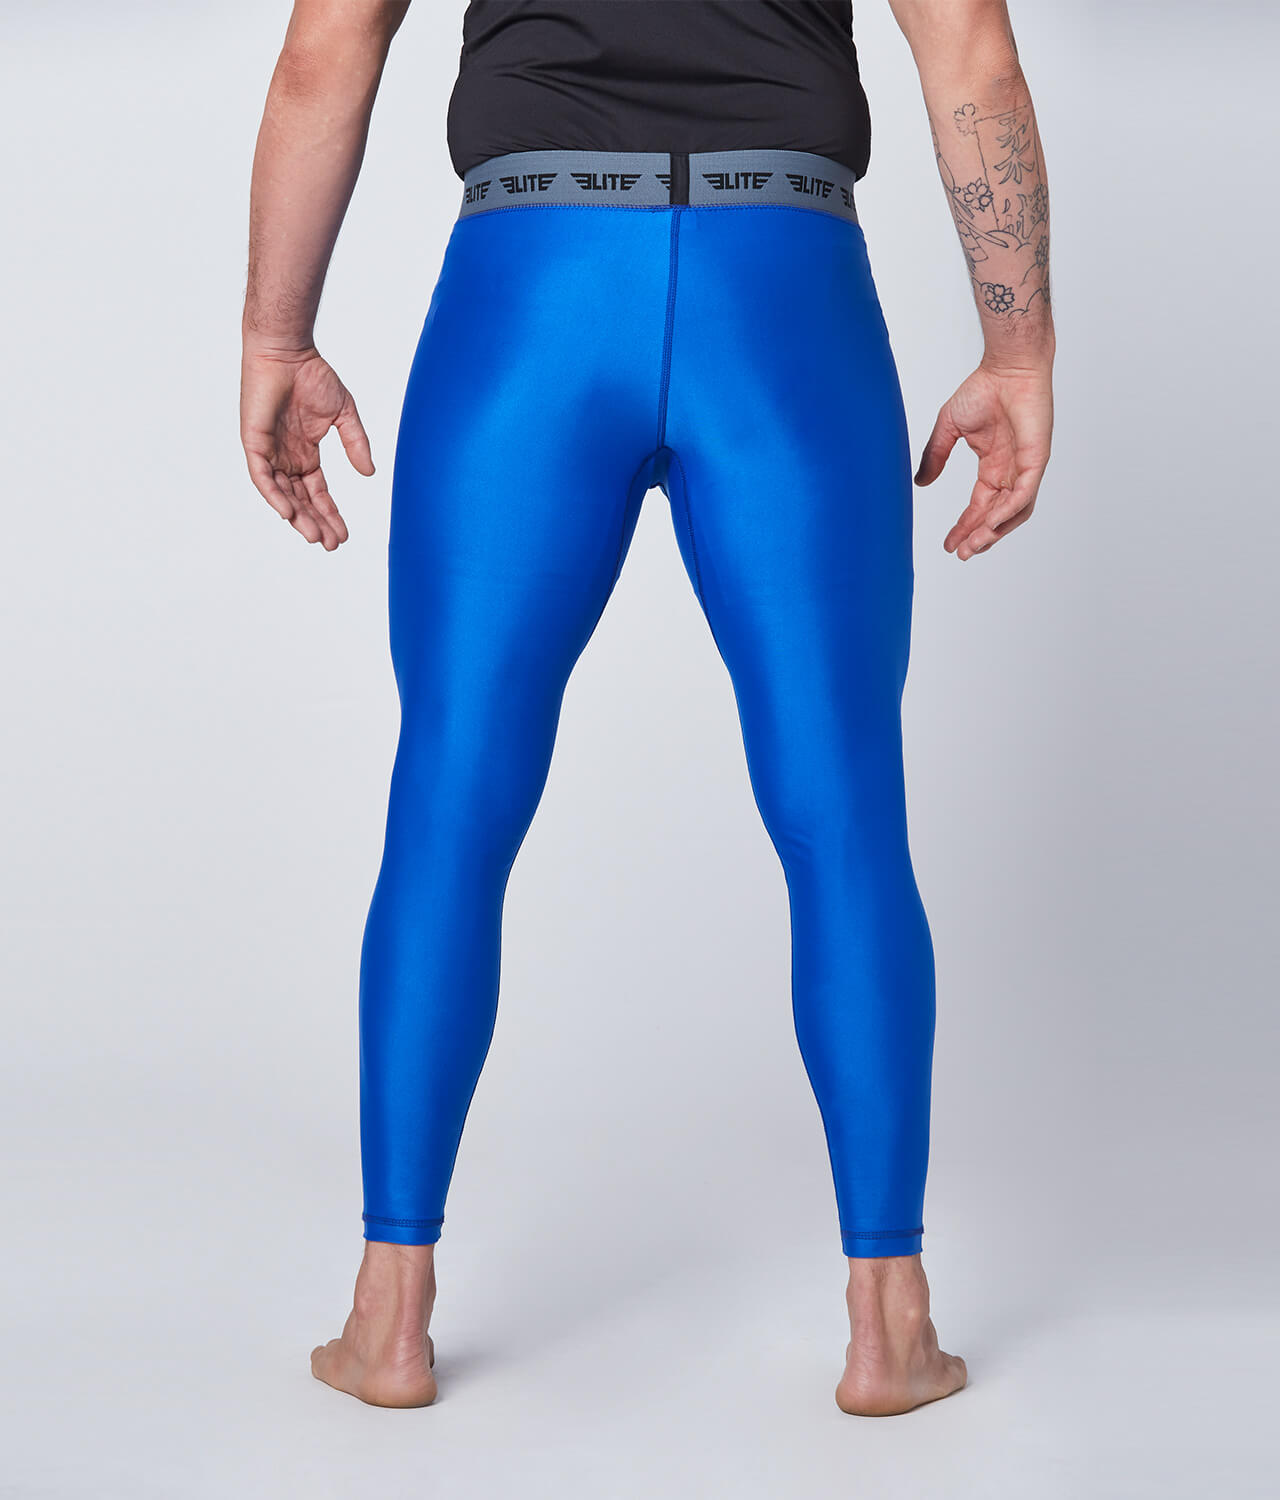 Elite Sports Plain Blue Compression Training Spat Pants